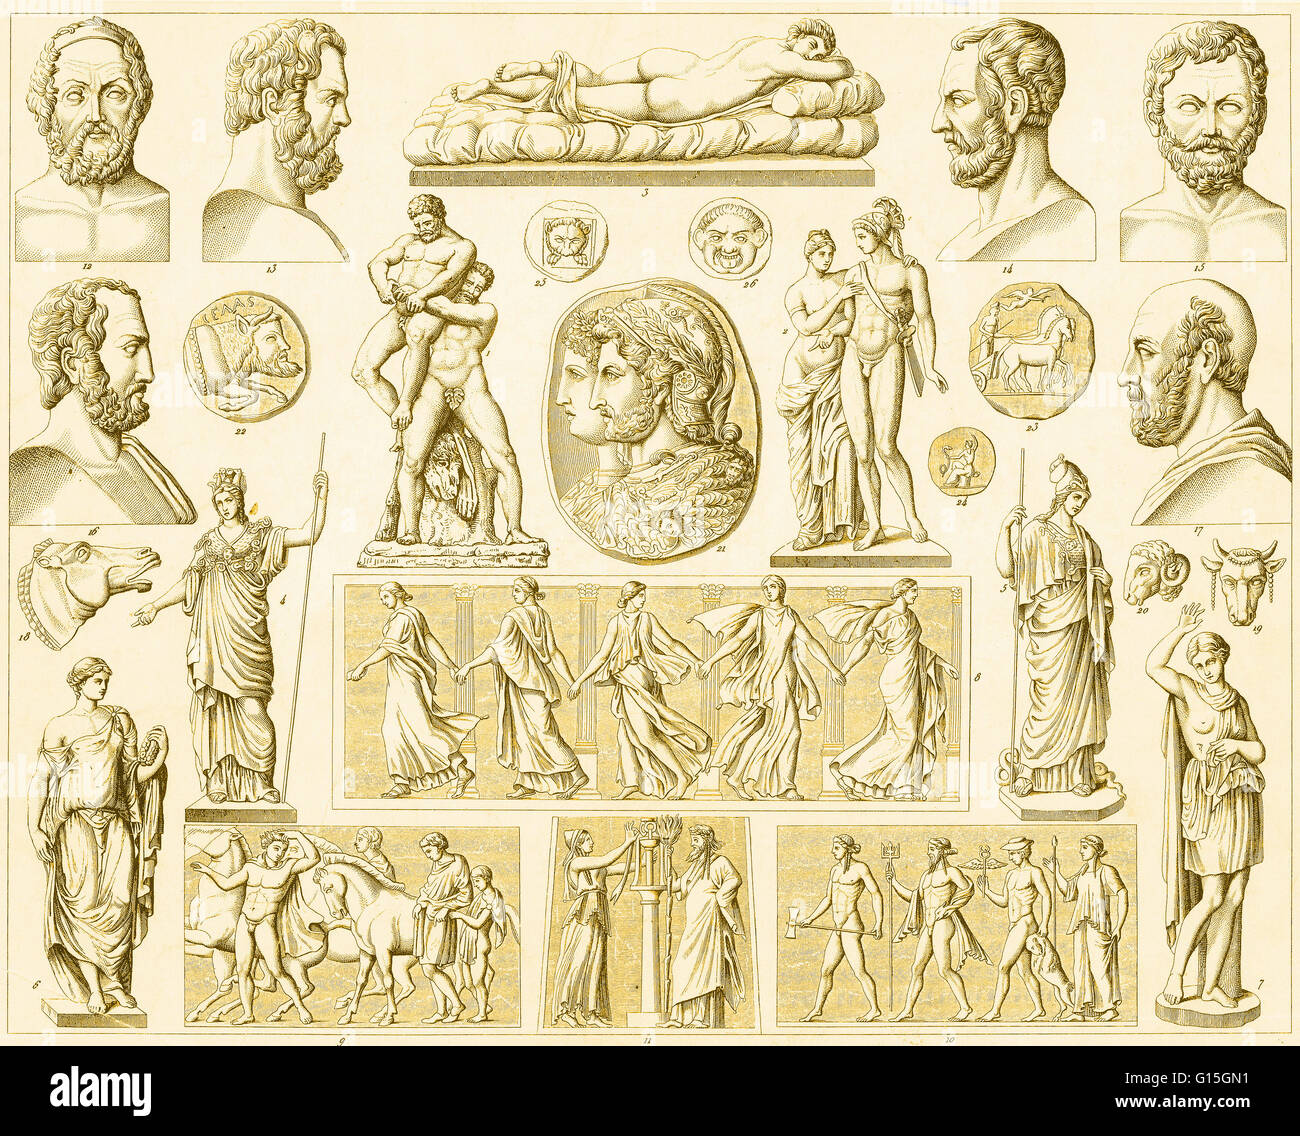 Les Figures De La Mythologie Grecque Et Romaine Photo Stock Alamy